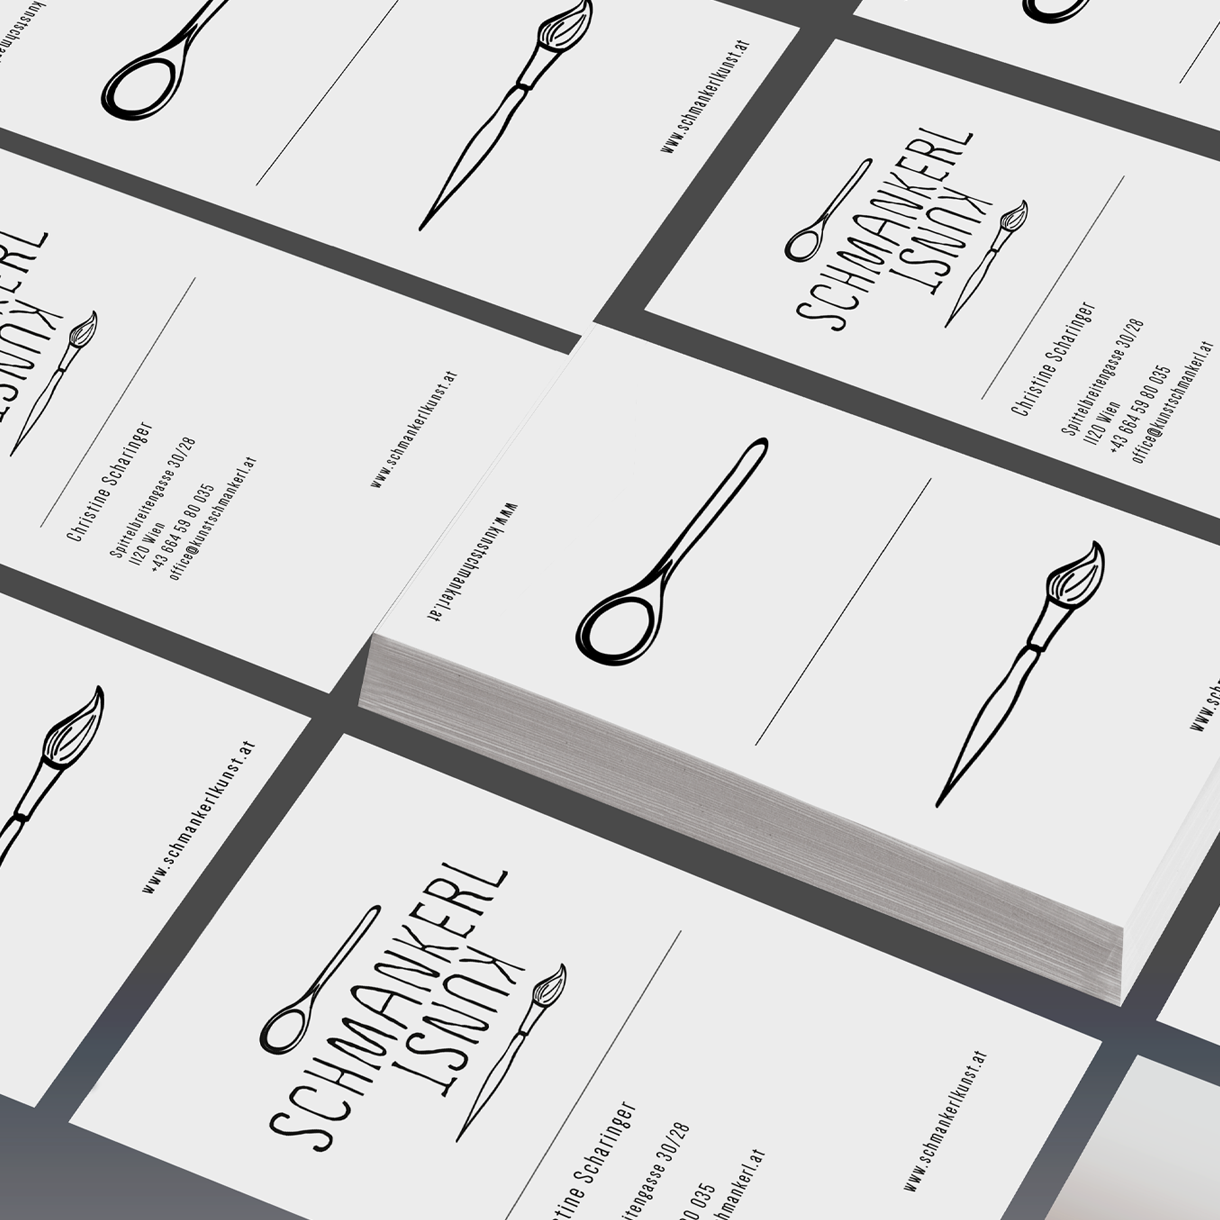 Markenstolz // Brandstory Corporate Design Print Packaging